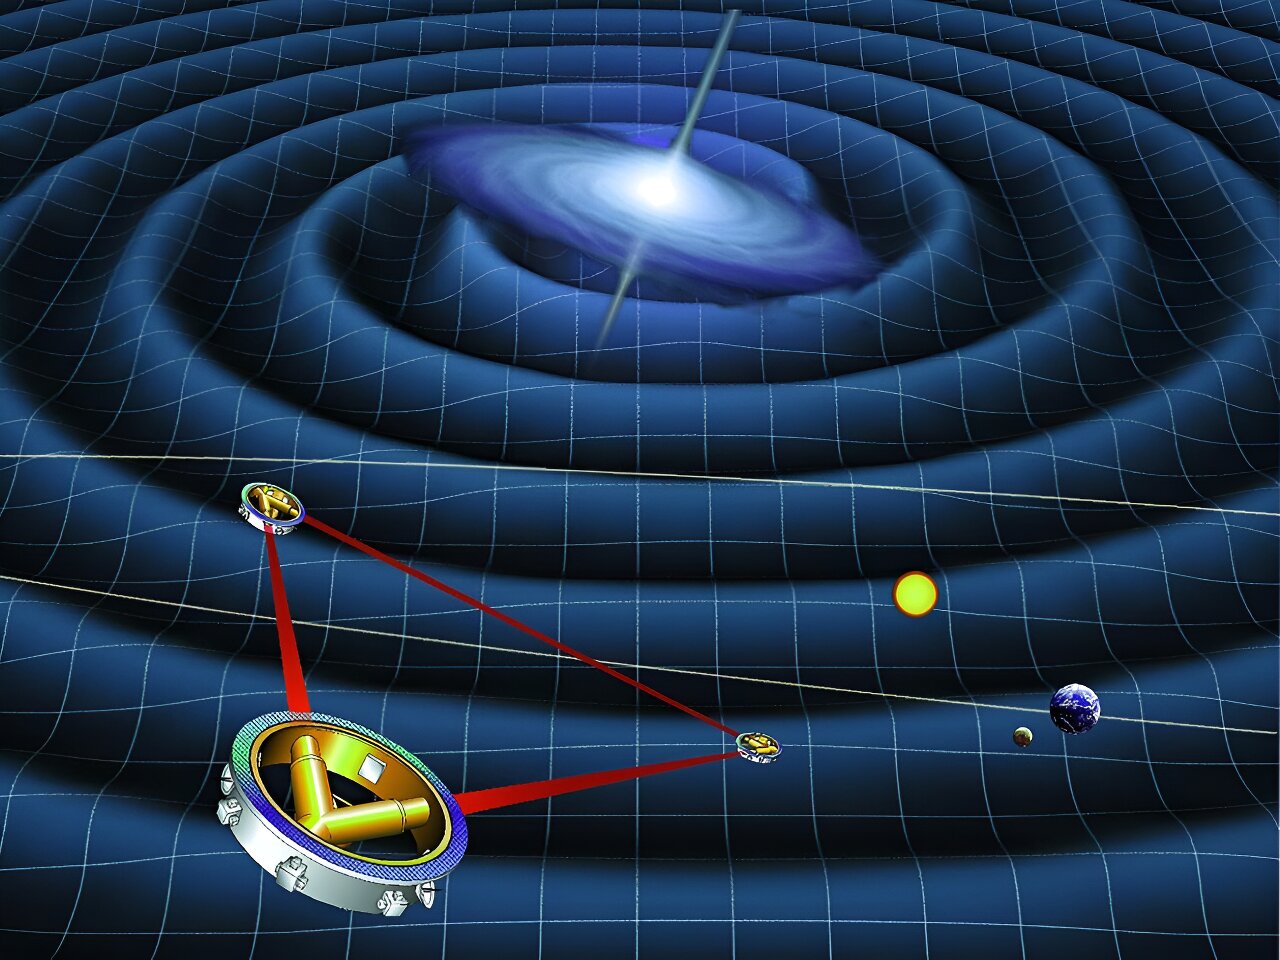 W artykule zbadano idealne orbity dla interferometrów kosmicznych